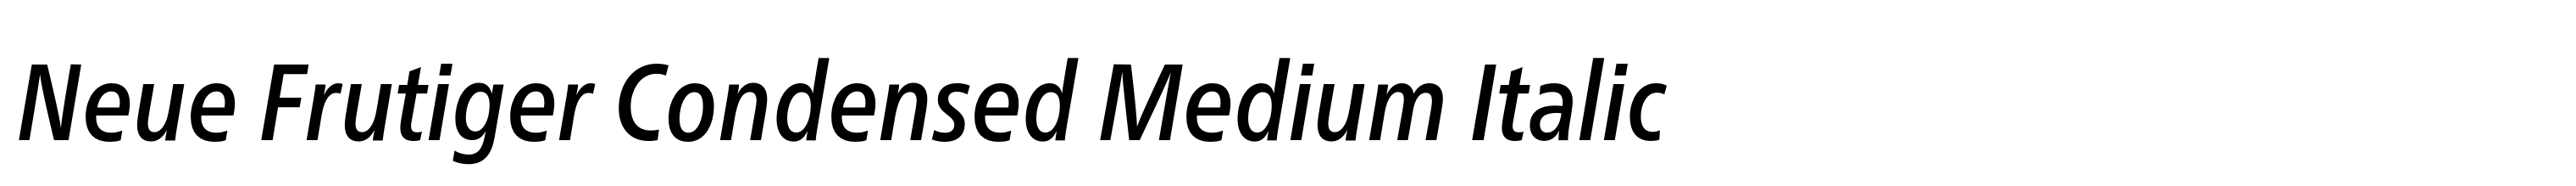 Neue Frutiger Condensed Medium Italic